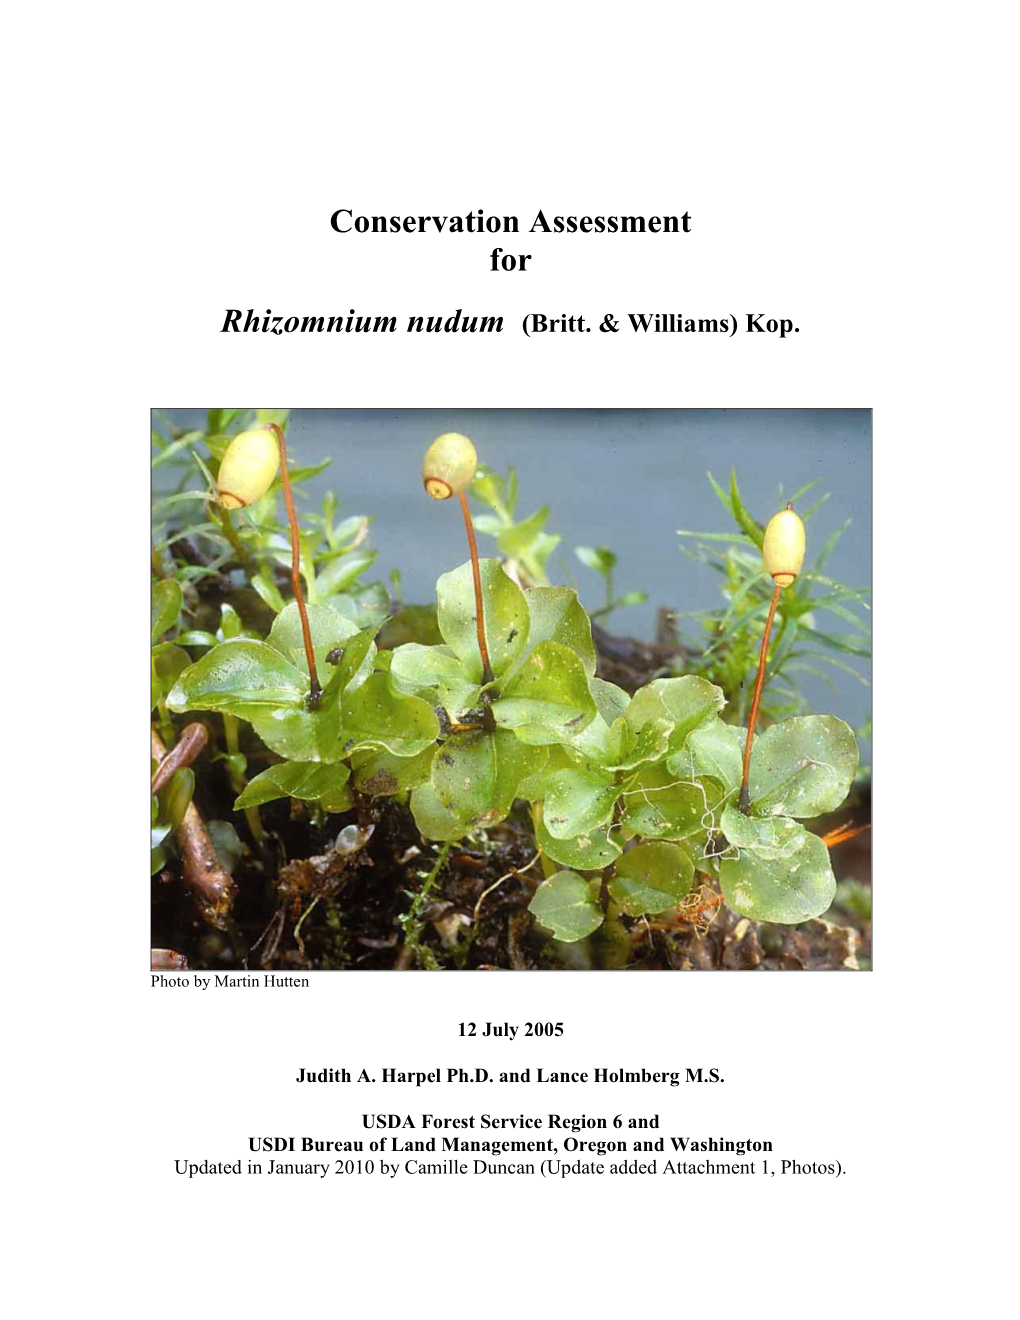 Conservation Assessment for Rhizomnium Nudum (Britt